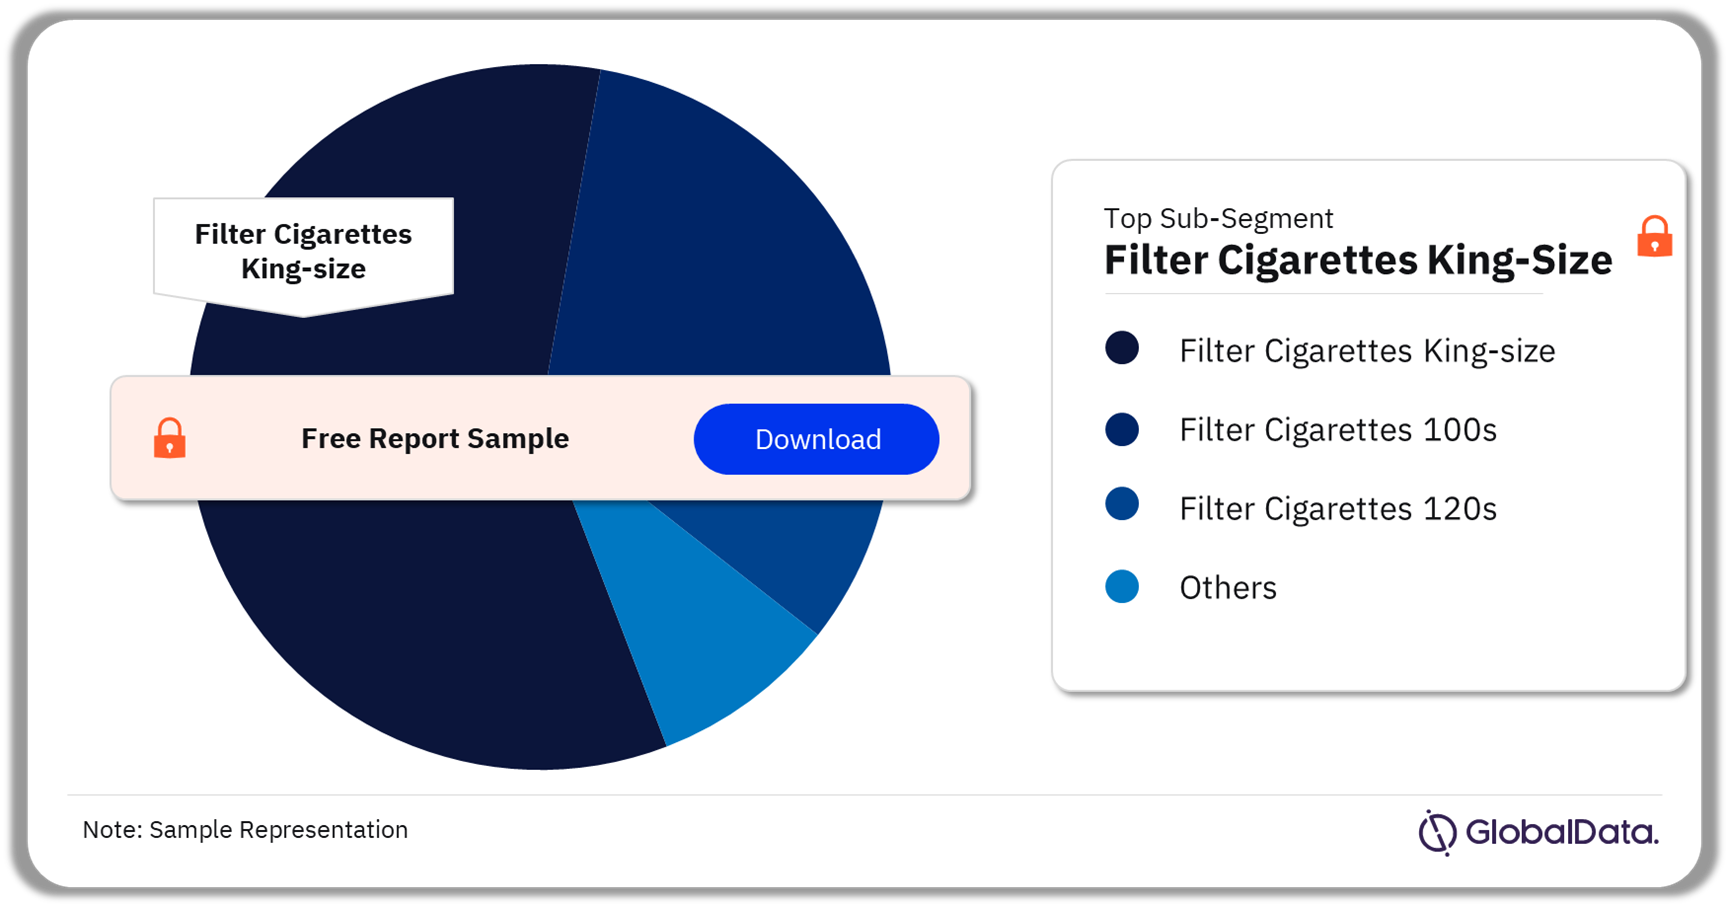 Hong Kong Filter Cigarettes Market Analysis by Sub-Segments, 2022 (%)